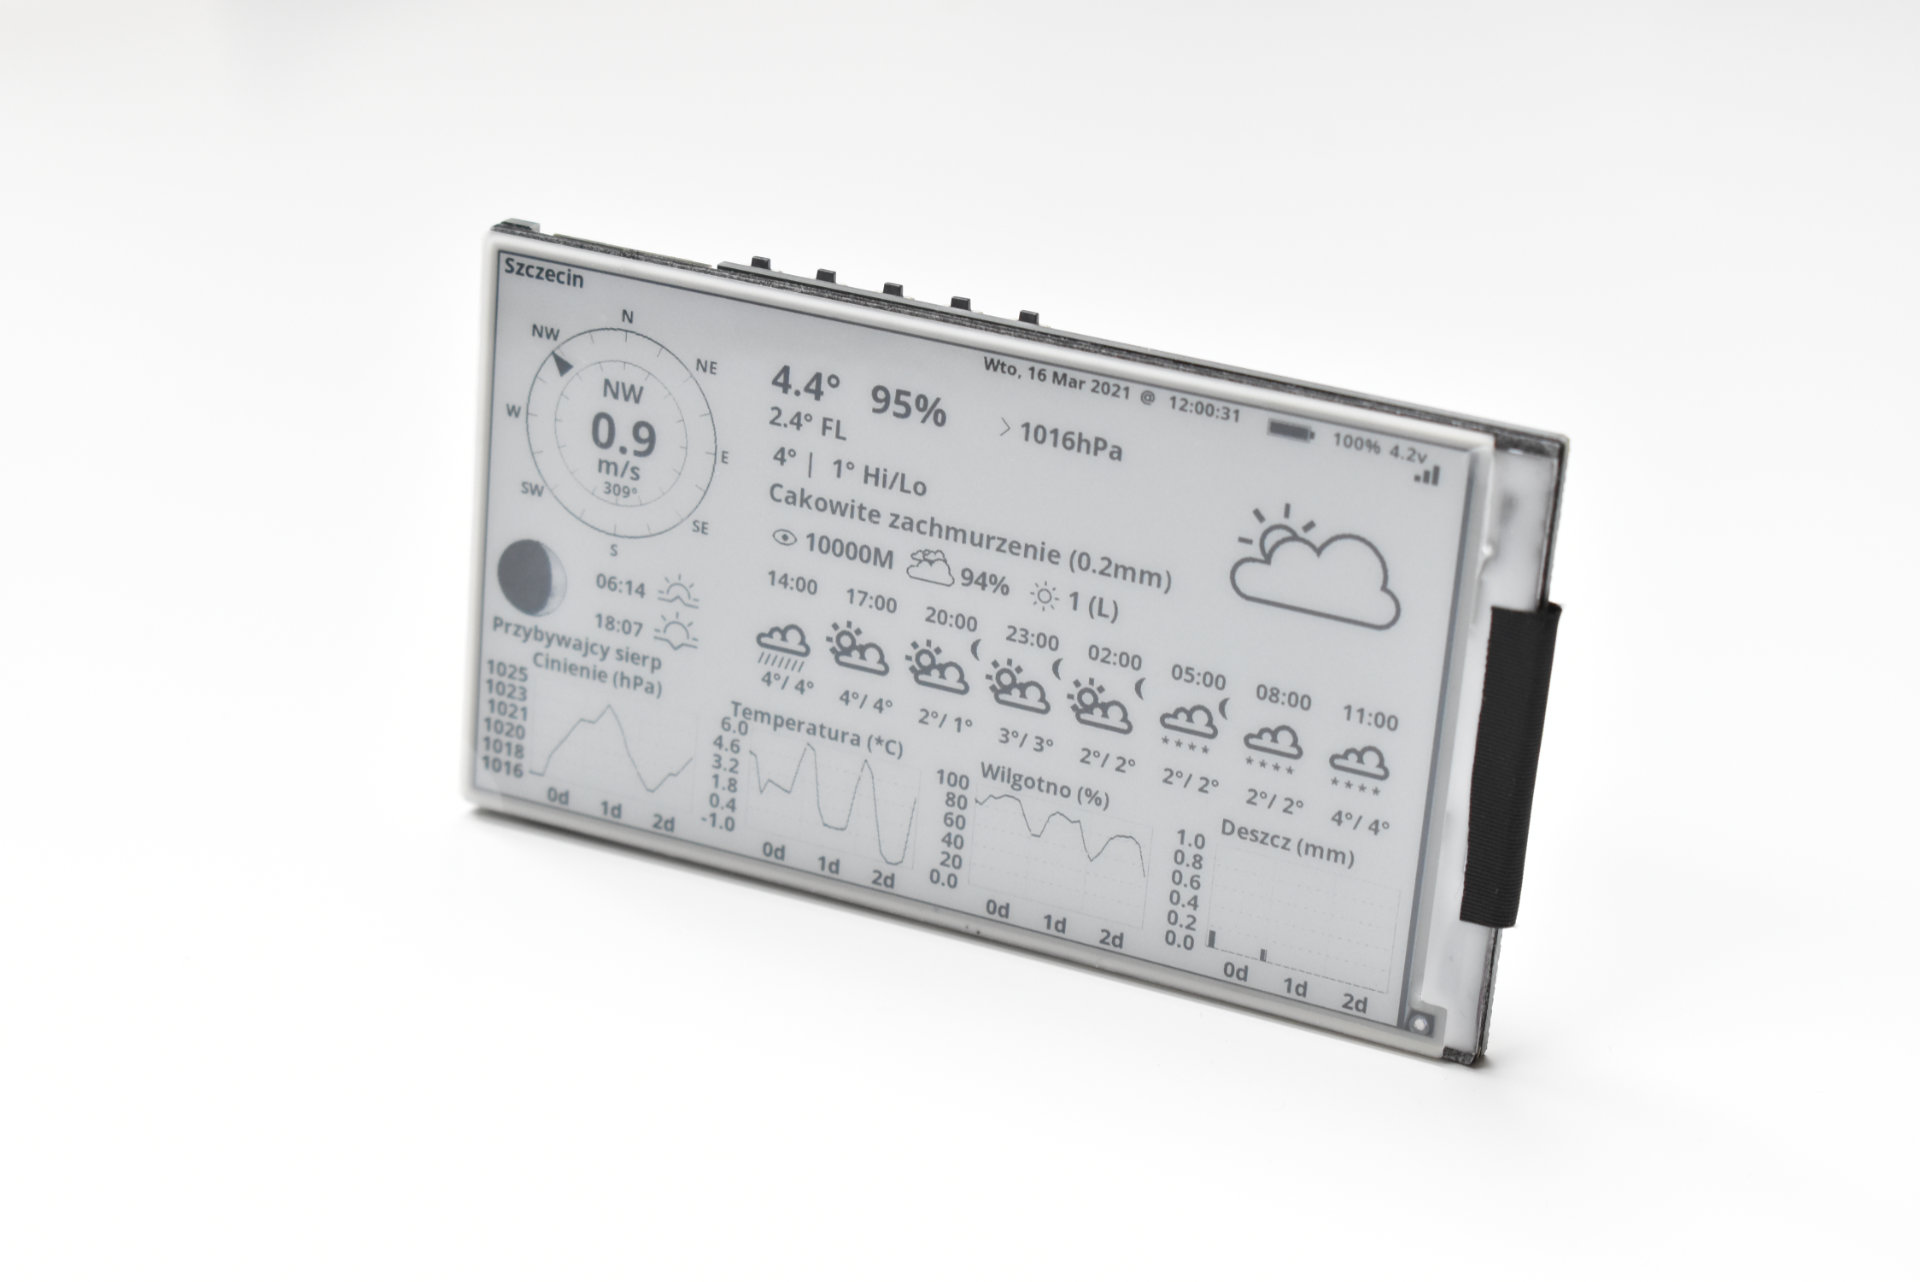 LILYGO T5 4.7-inch E-paper ESP32 development board